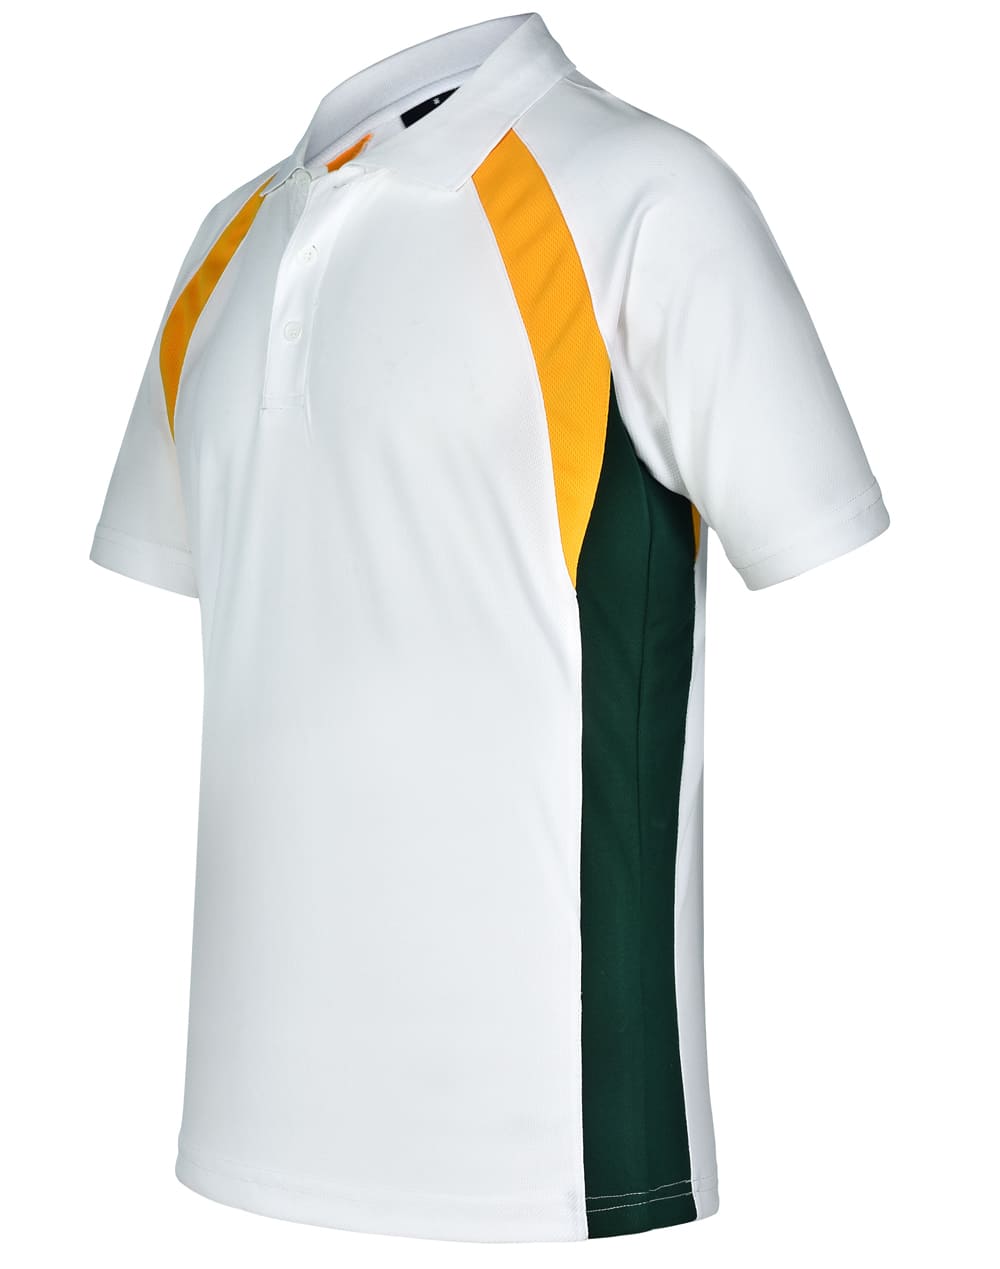 Custom Printed Mens (White Gold Bottle) Short Sleeve Sports Online Perth Australia